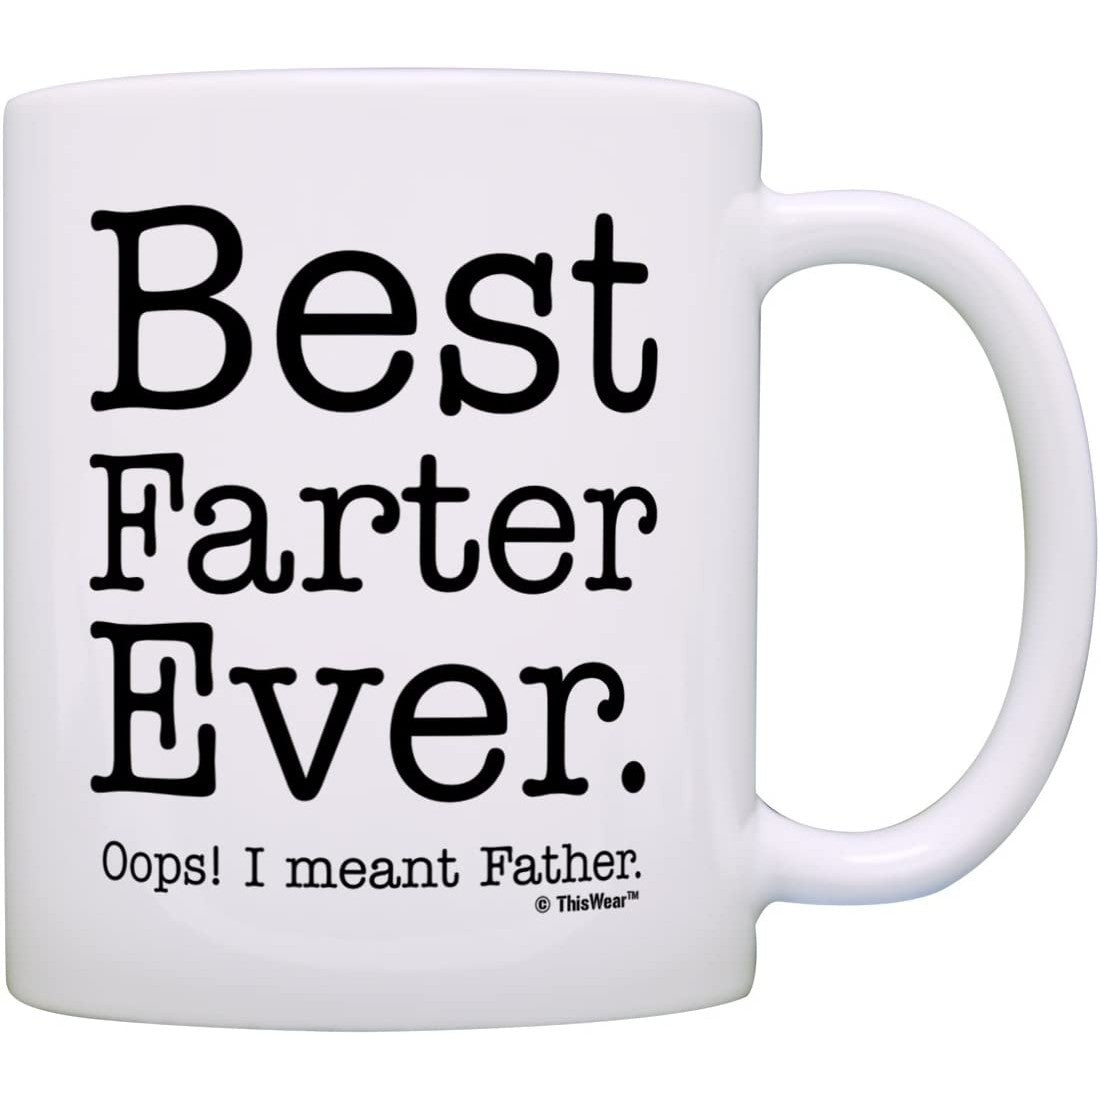 Funny Coffee Mugs, Poop Mug, Funny Coffee Mug for Men, Funny Mug